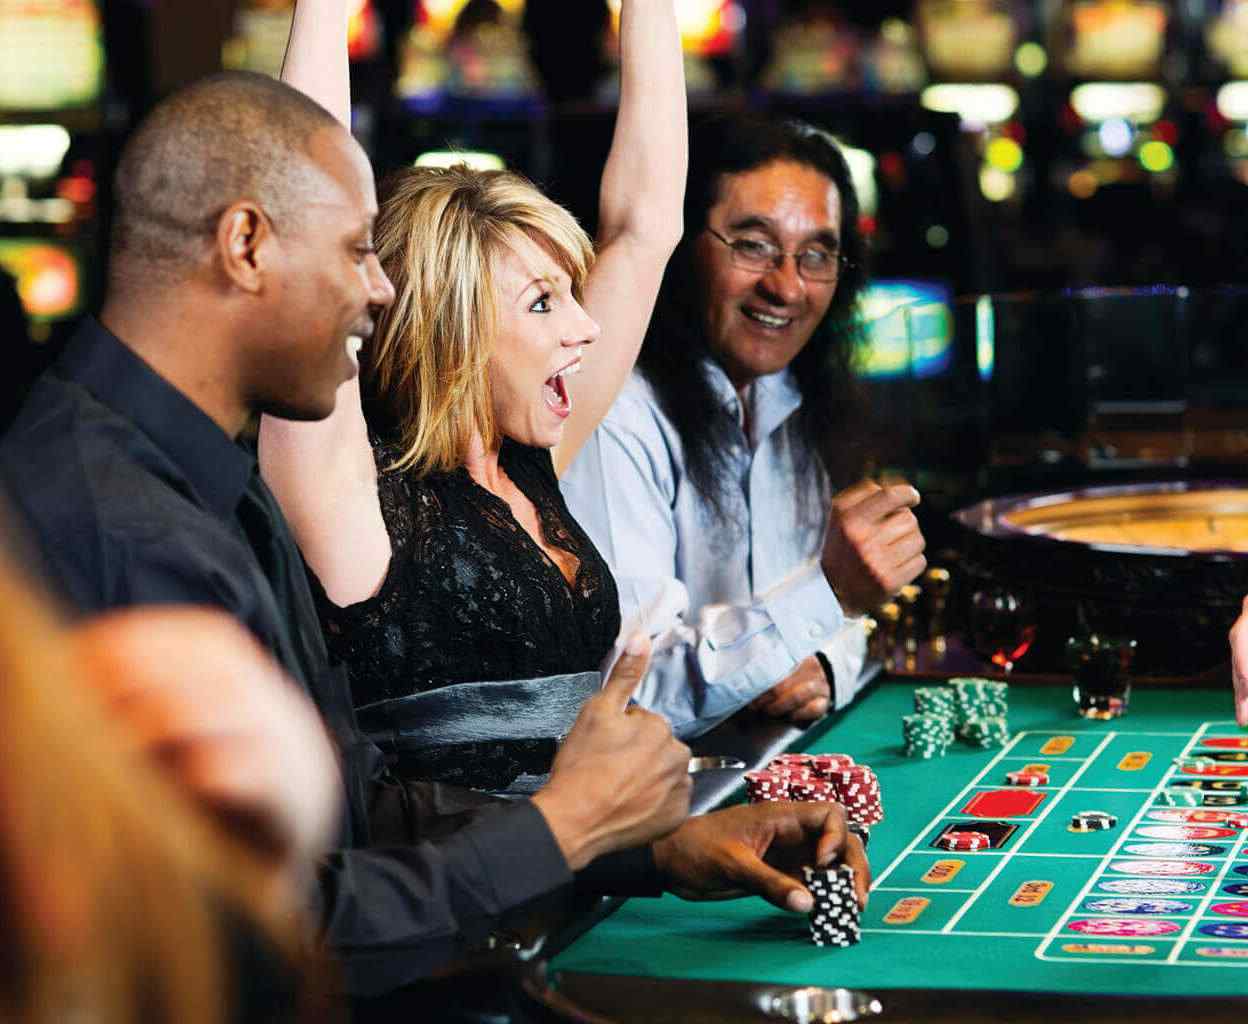 Understanding online casino